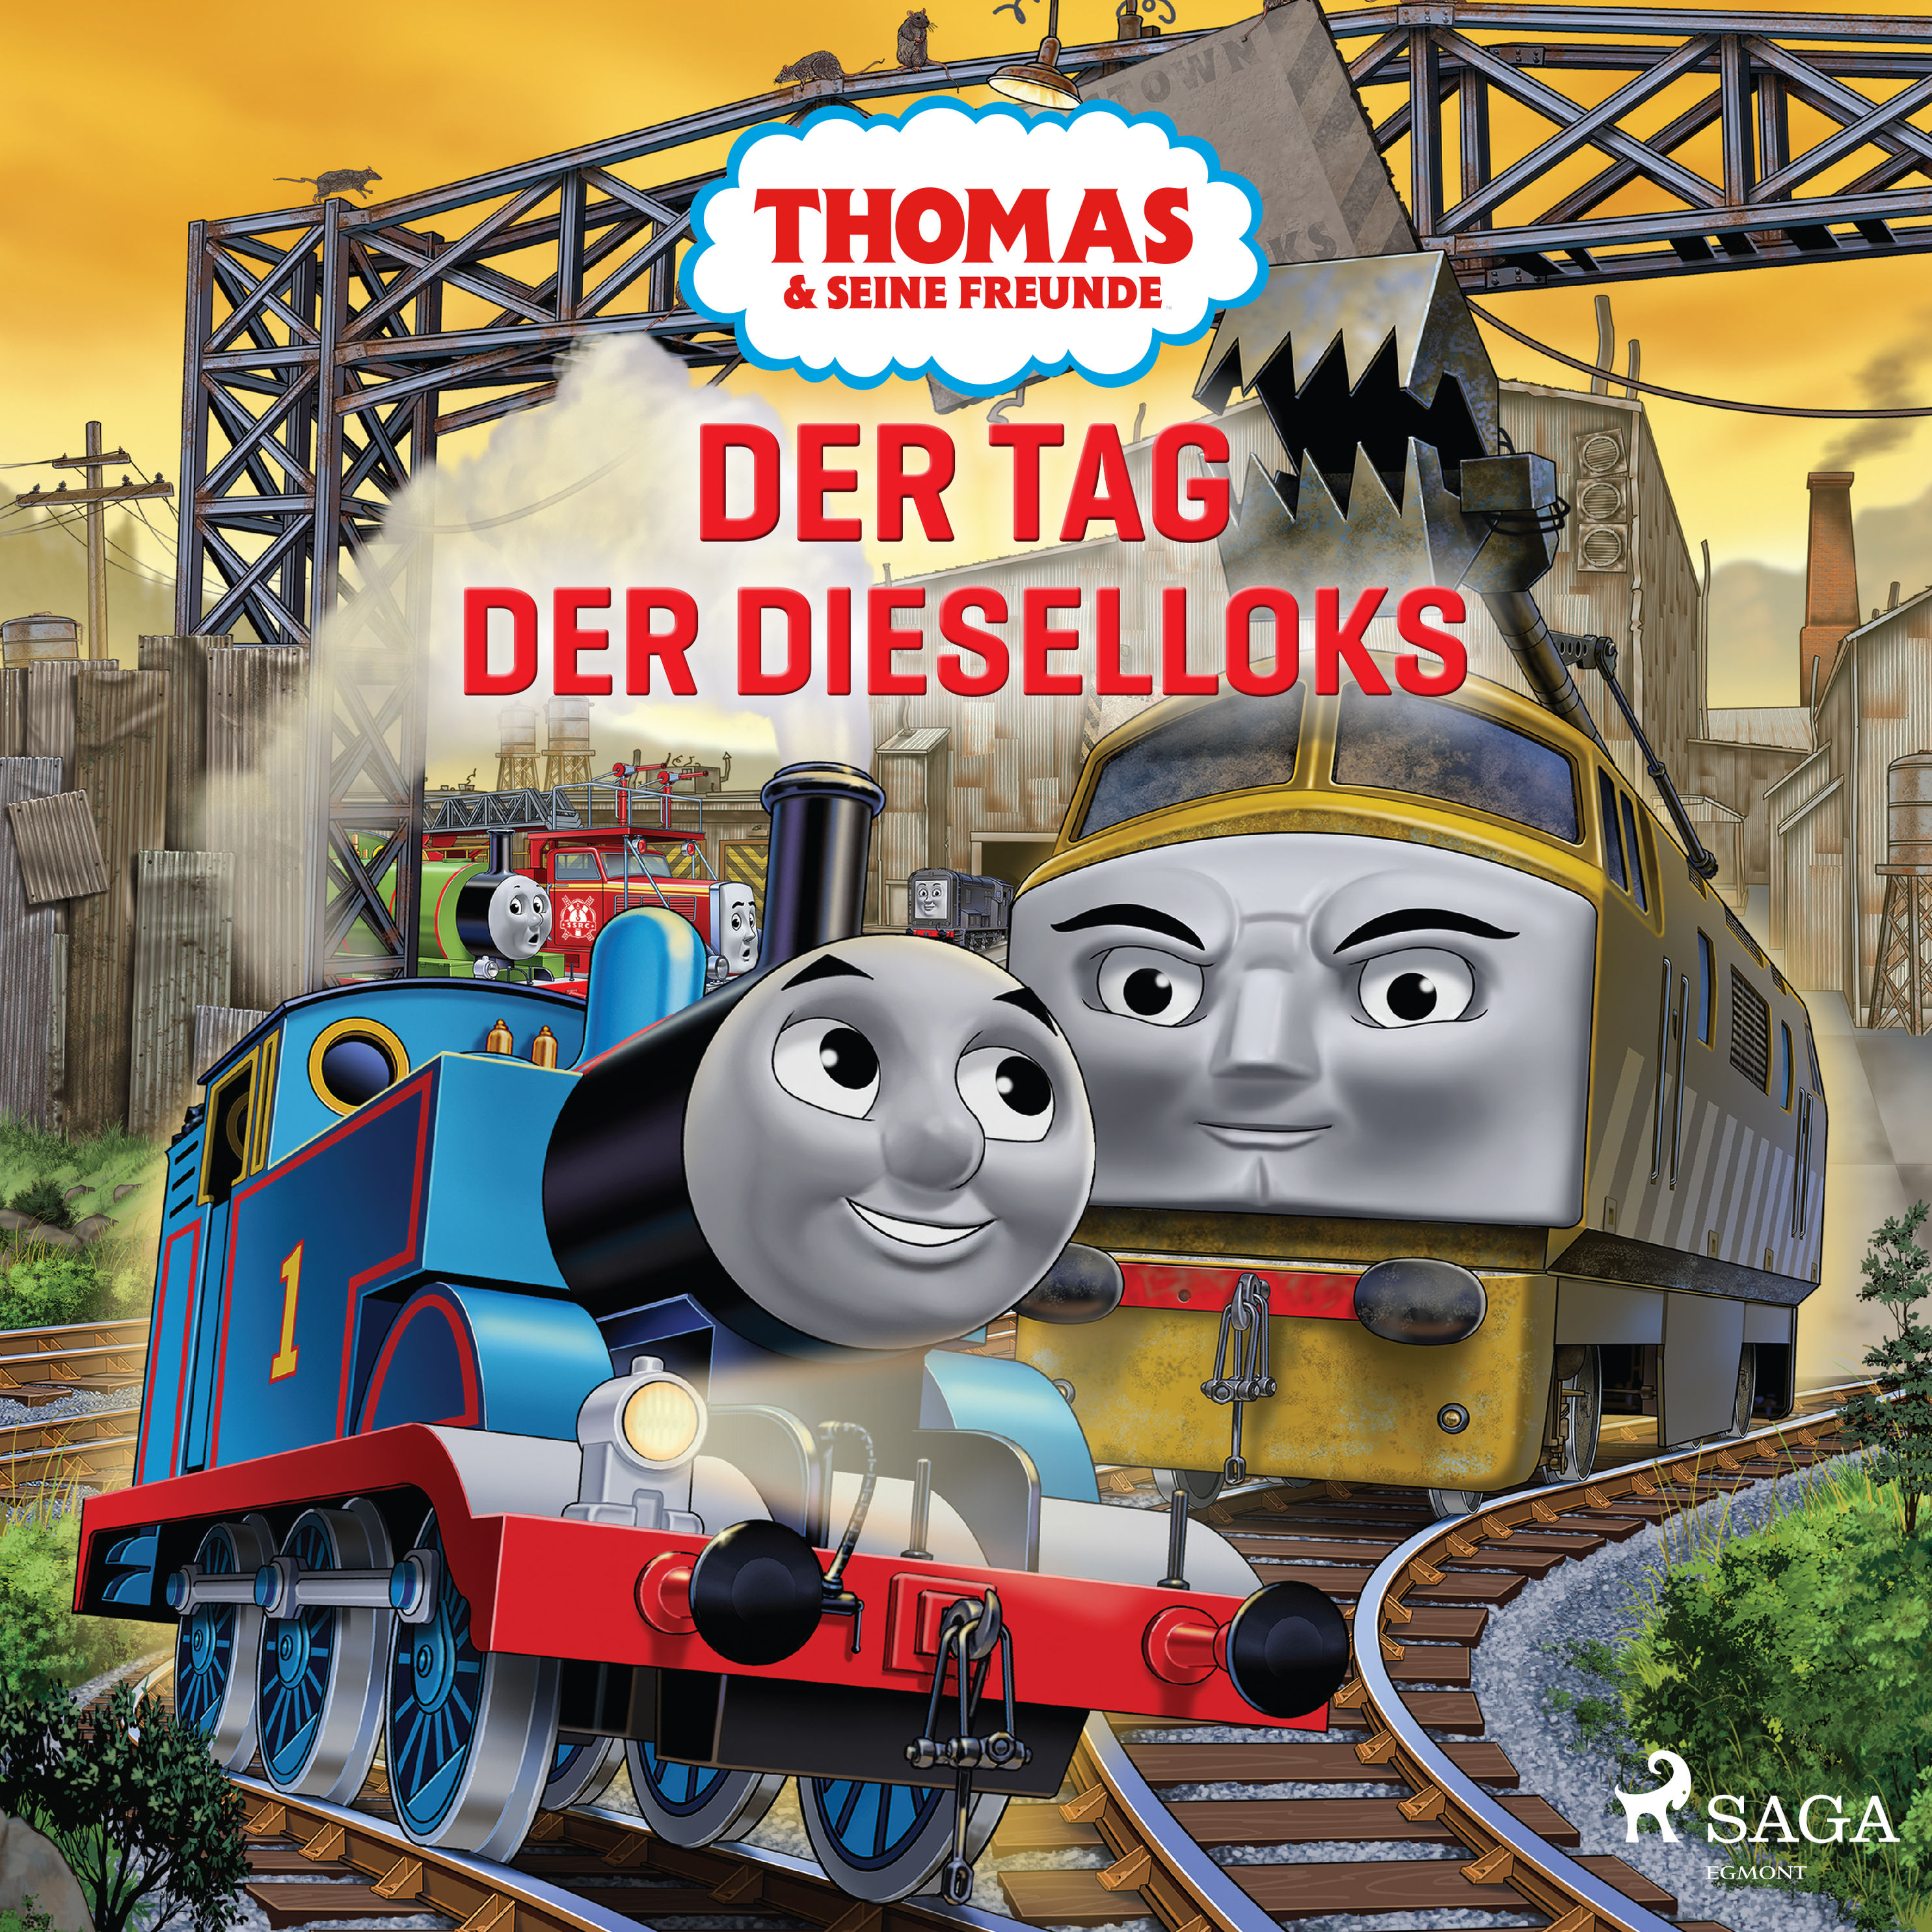 Thomas and Friends - Thomas und seine Freunde - Dampfloks gegen Dieselloks  Hörbuch Download